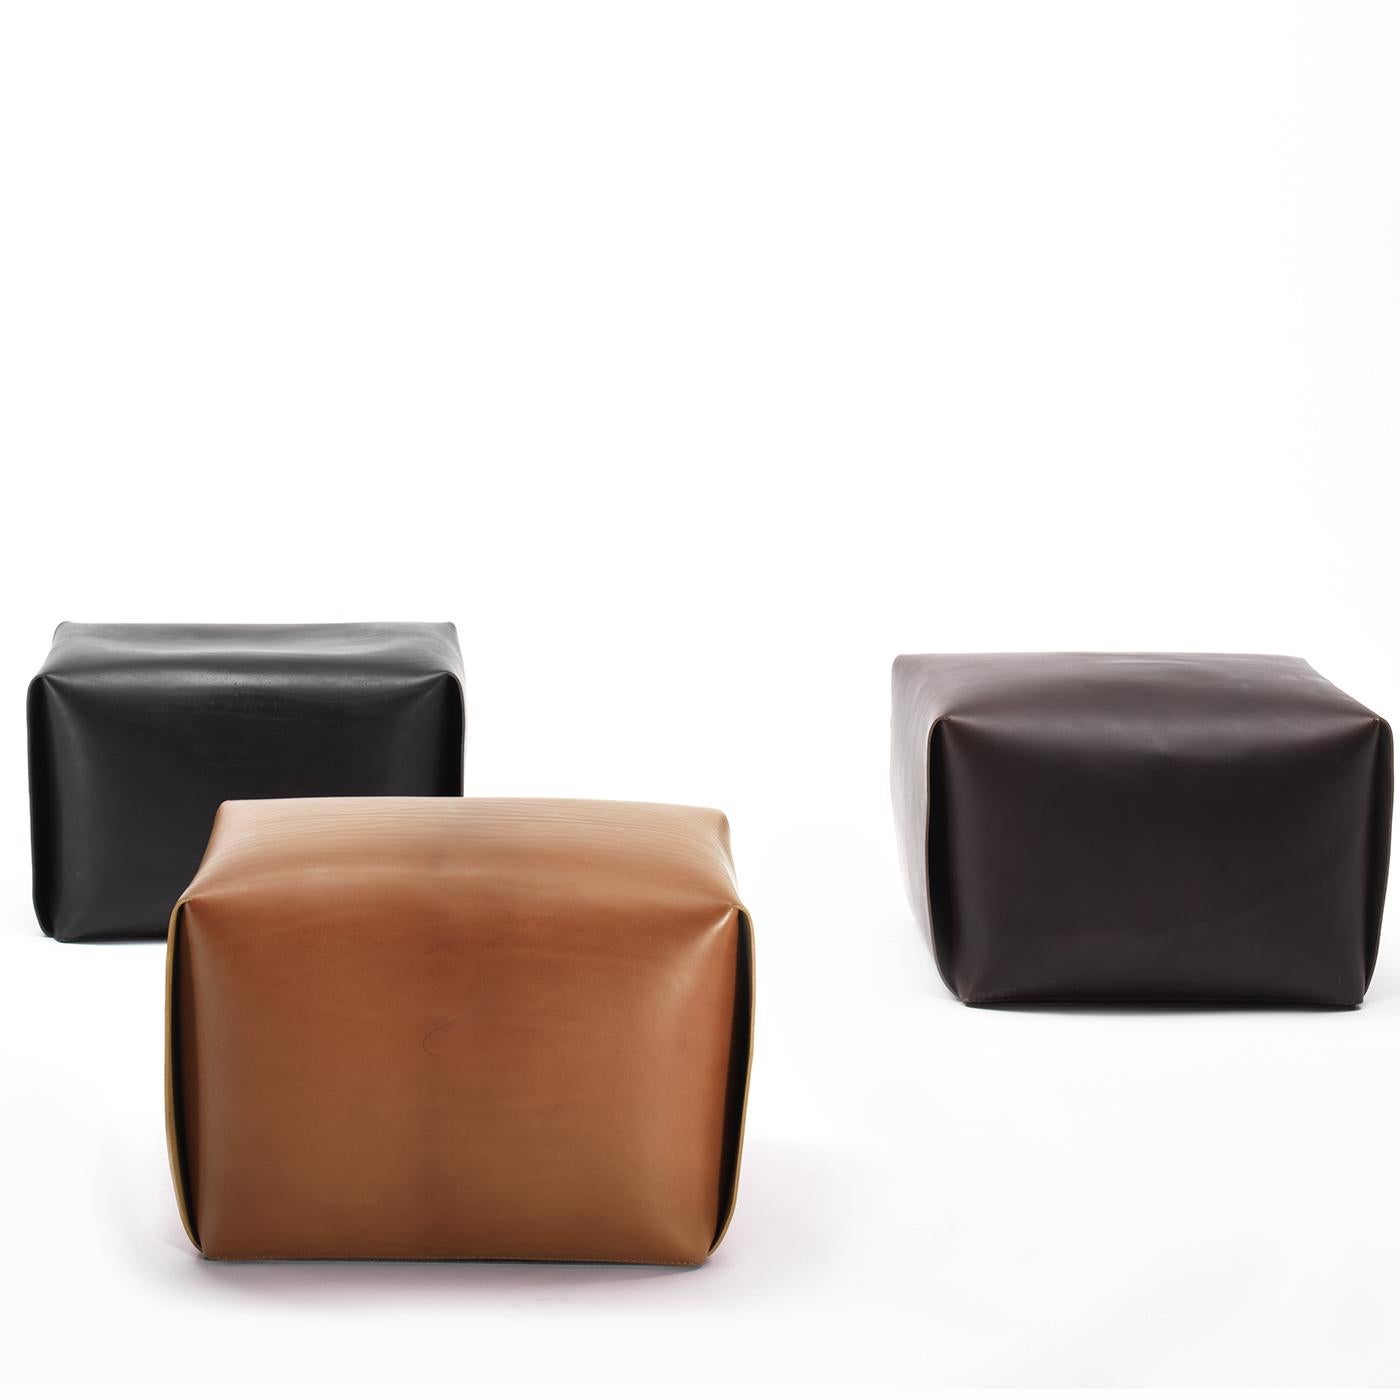 Cette chaise-sac raffinée est soigneusement enveloppée dans une seule pièce de cuir souple pleine fleur, dont les plis ressemblent à ceux de l'origami. Sa forme intemporelle et nostalgique rappelle les vieilles tables de chevet des années 50.